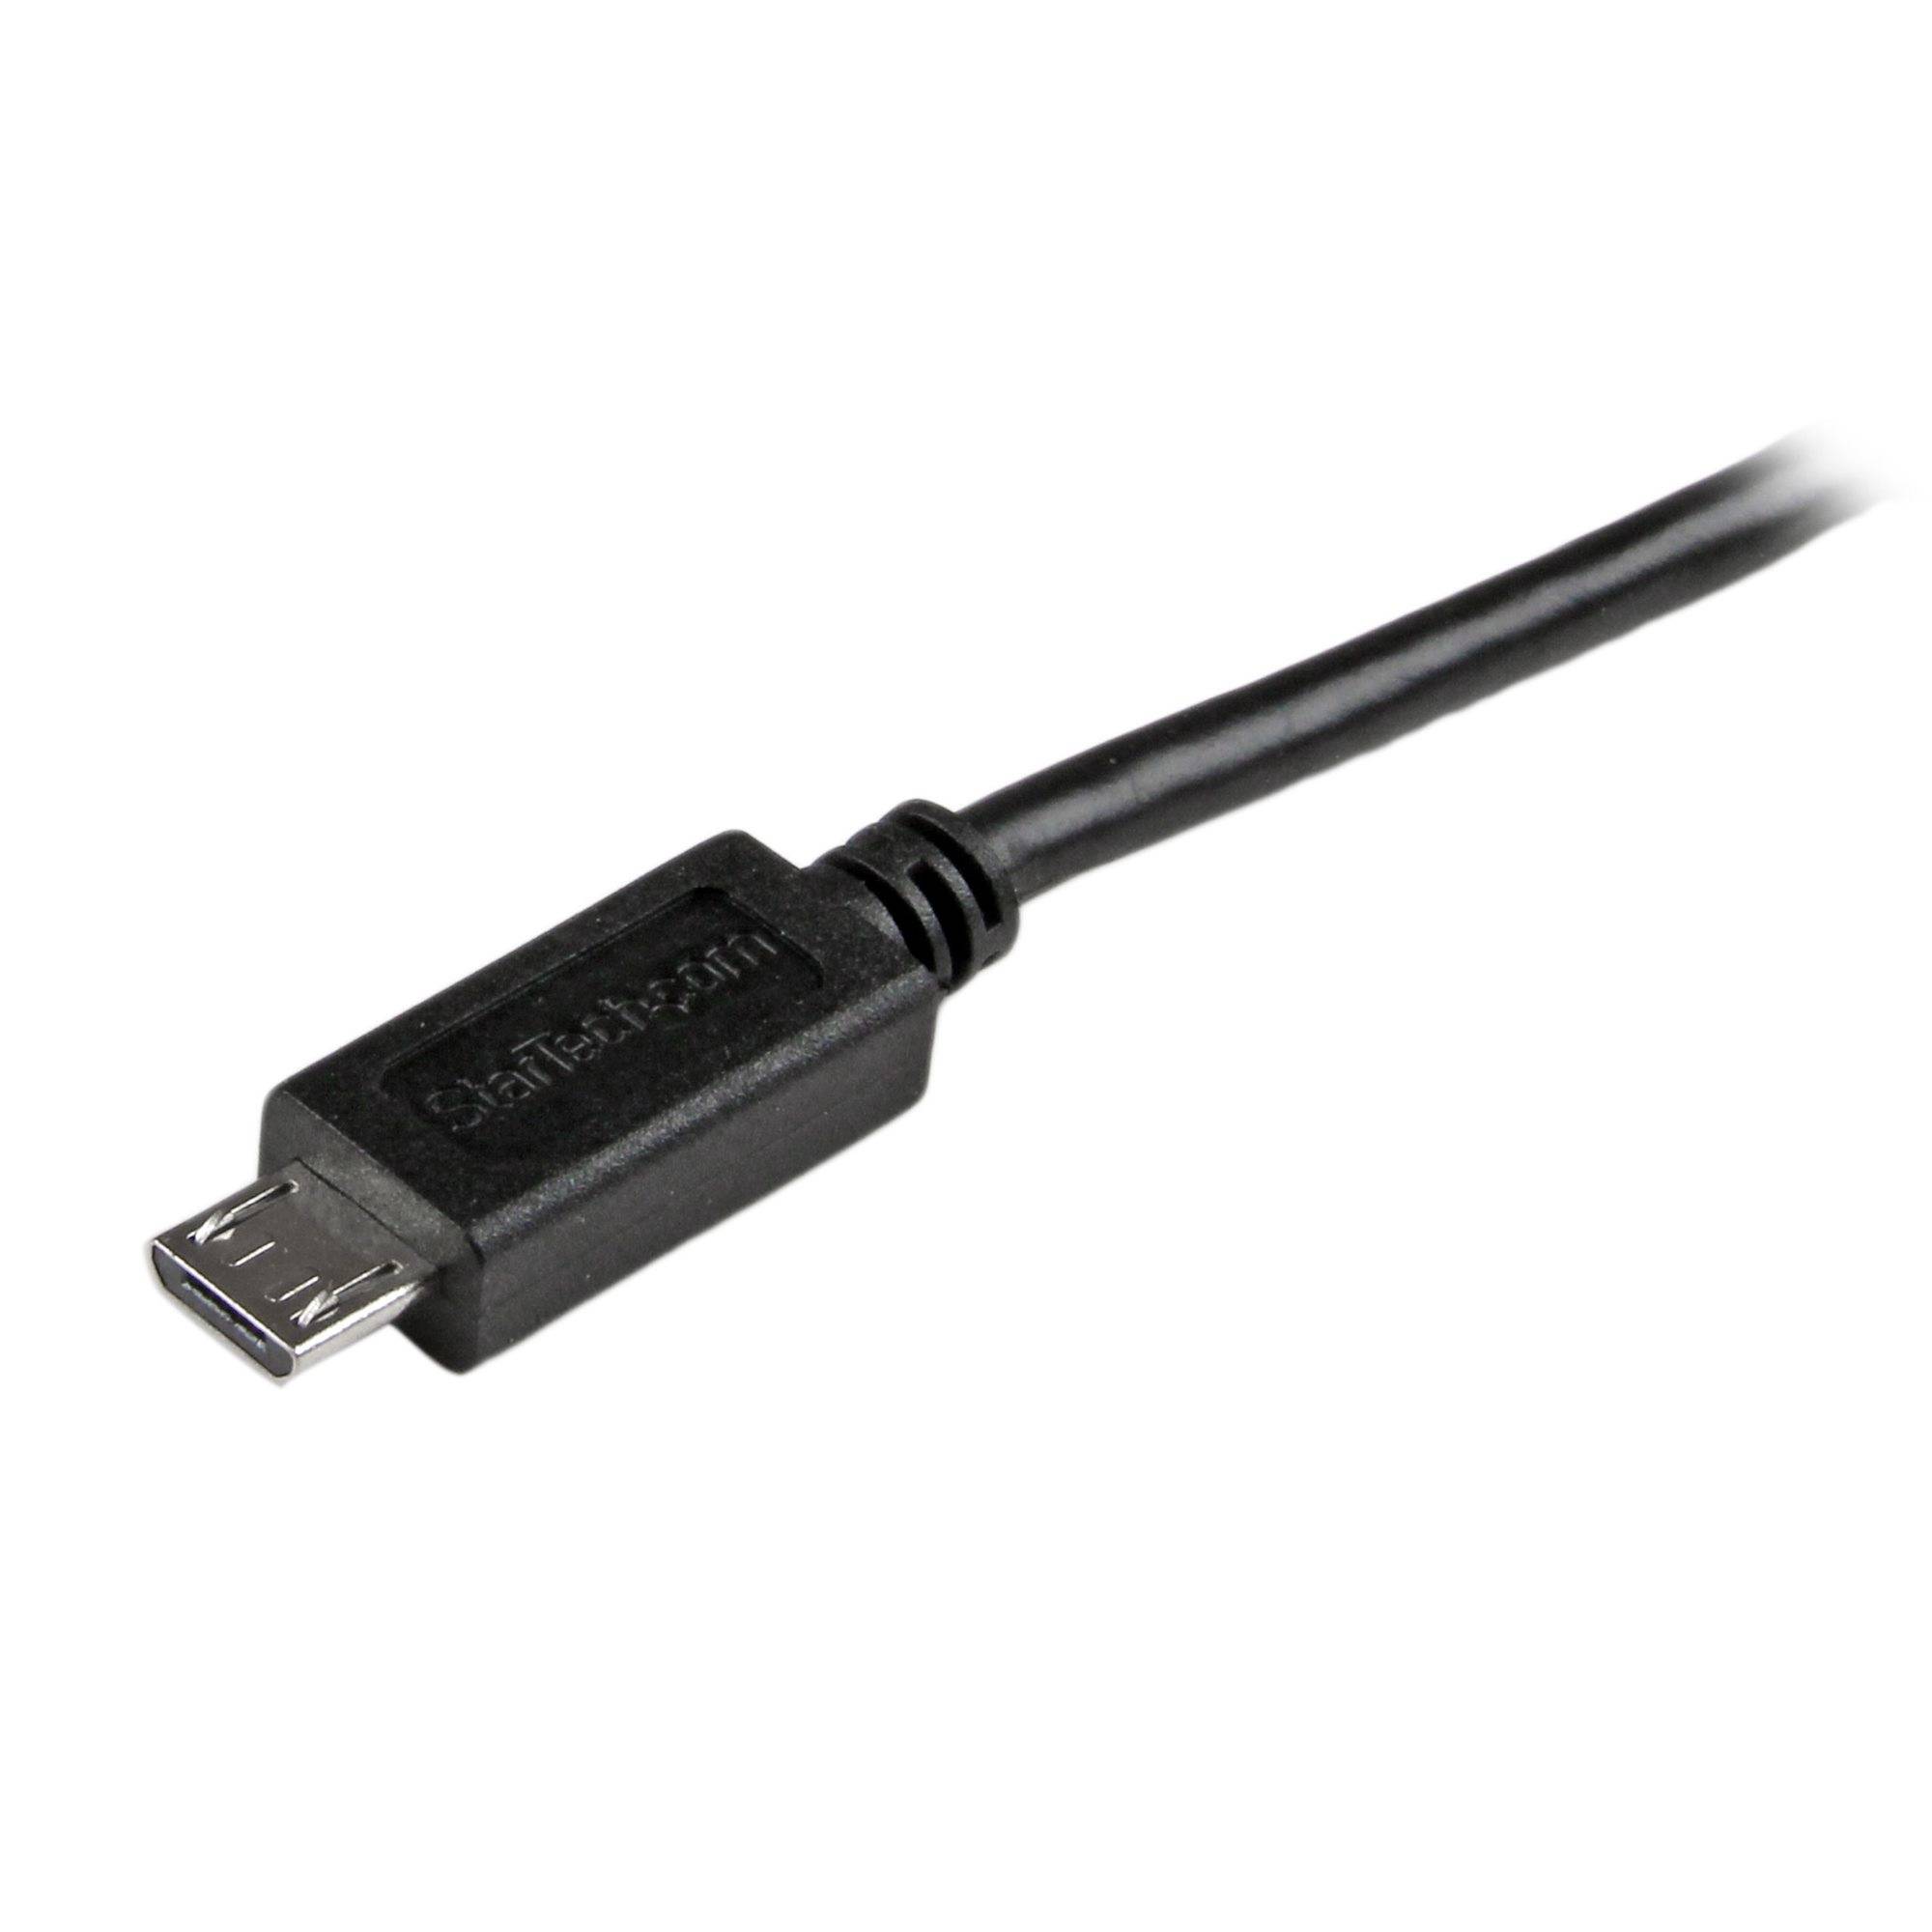 Rca Informatique - image du produit : CABLE CHARGE / SYNCHRONISATION USB A VERS MICRO B MINCE 1M NOIR